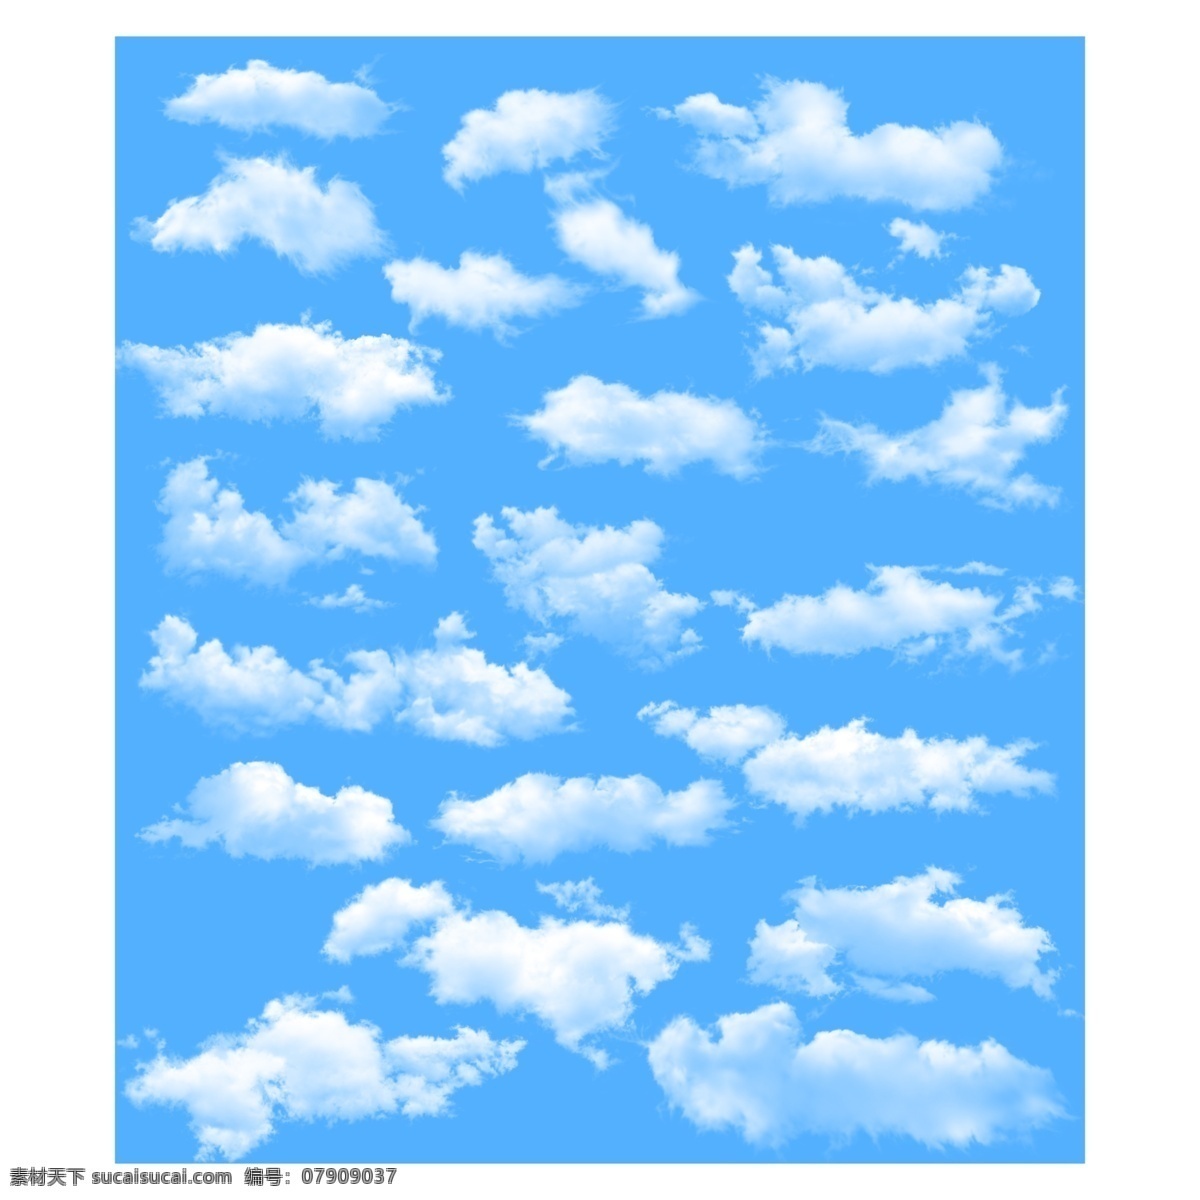 蓝天白云背景 白云背景墙 蓝天背景 蓝天白云底纹 白云 云朵 共享素材 底纹边框 其他素材